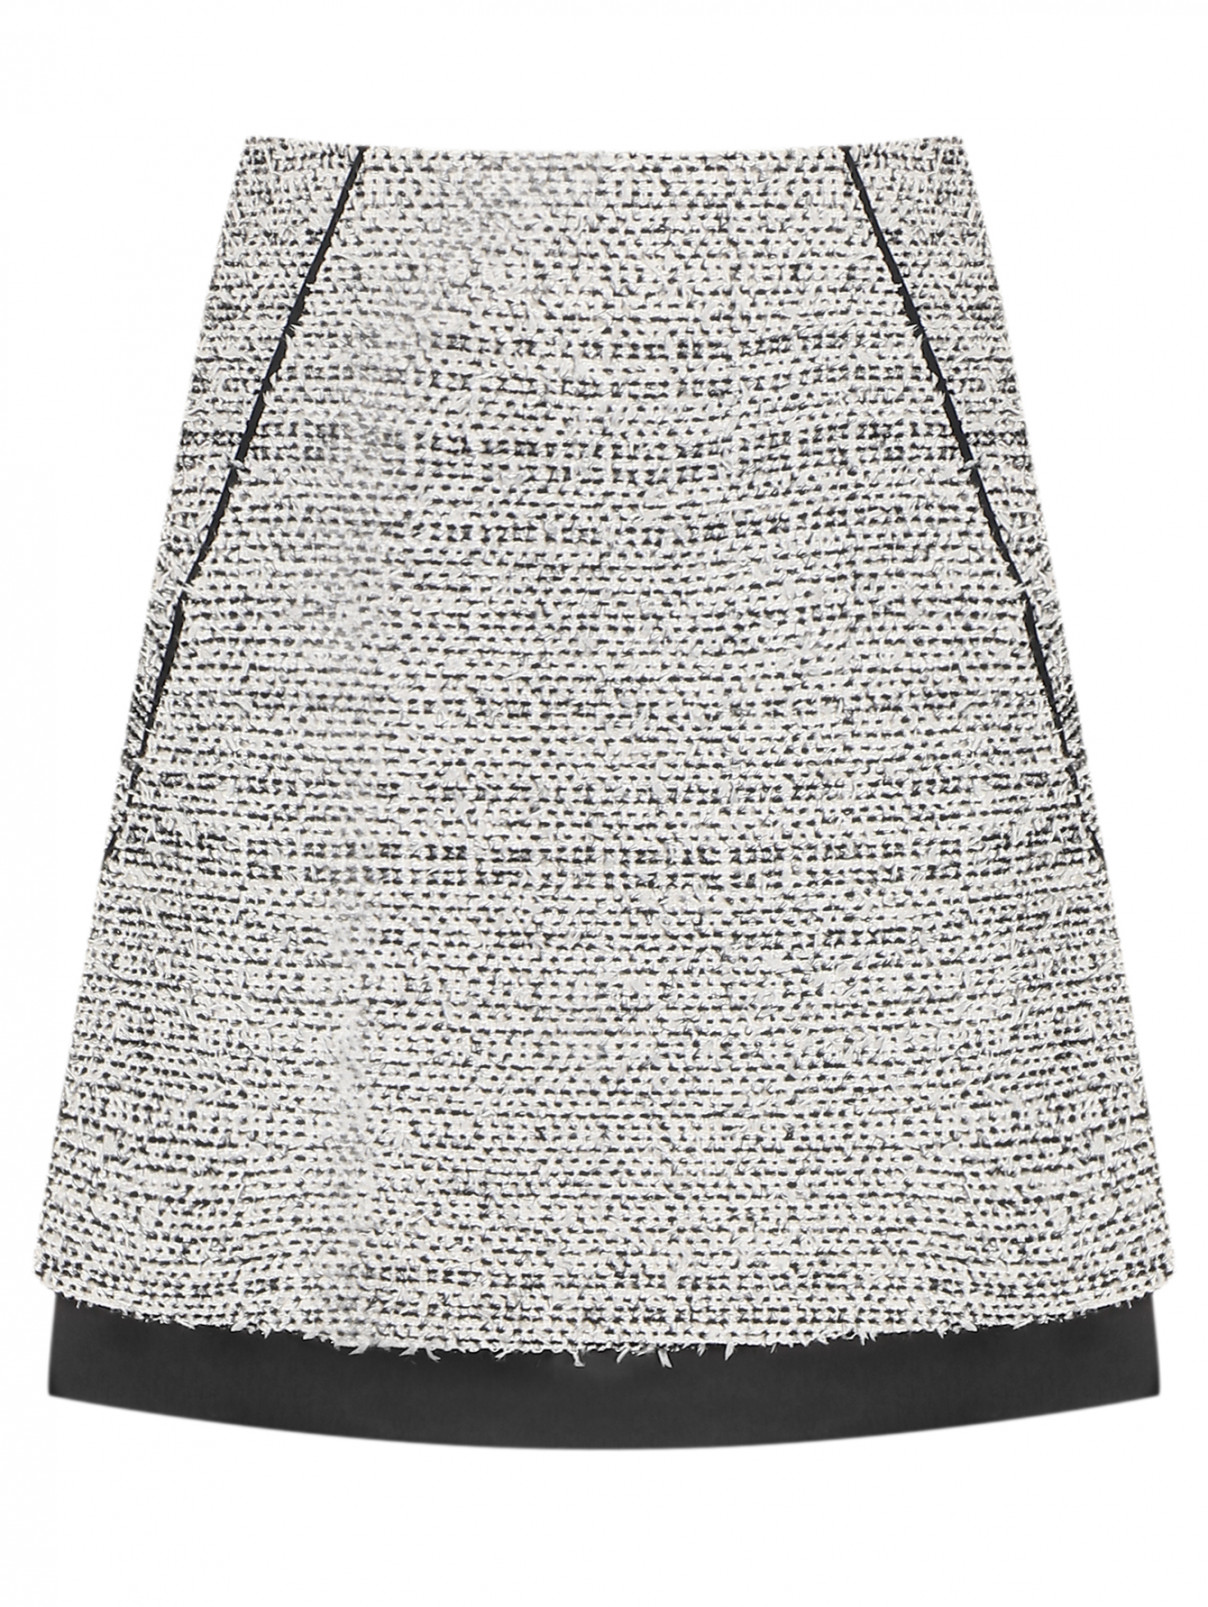 Фактурная юбка с люрексом и контрастной отделкой Karl Lagerfeld  –  Общий вид  – Цвет:  Белый